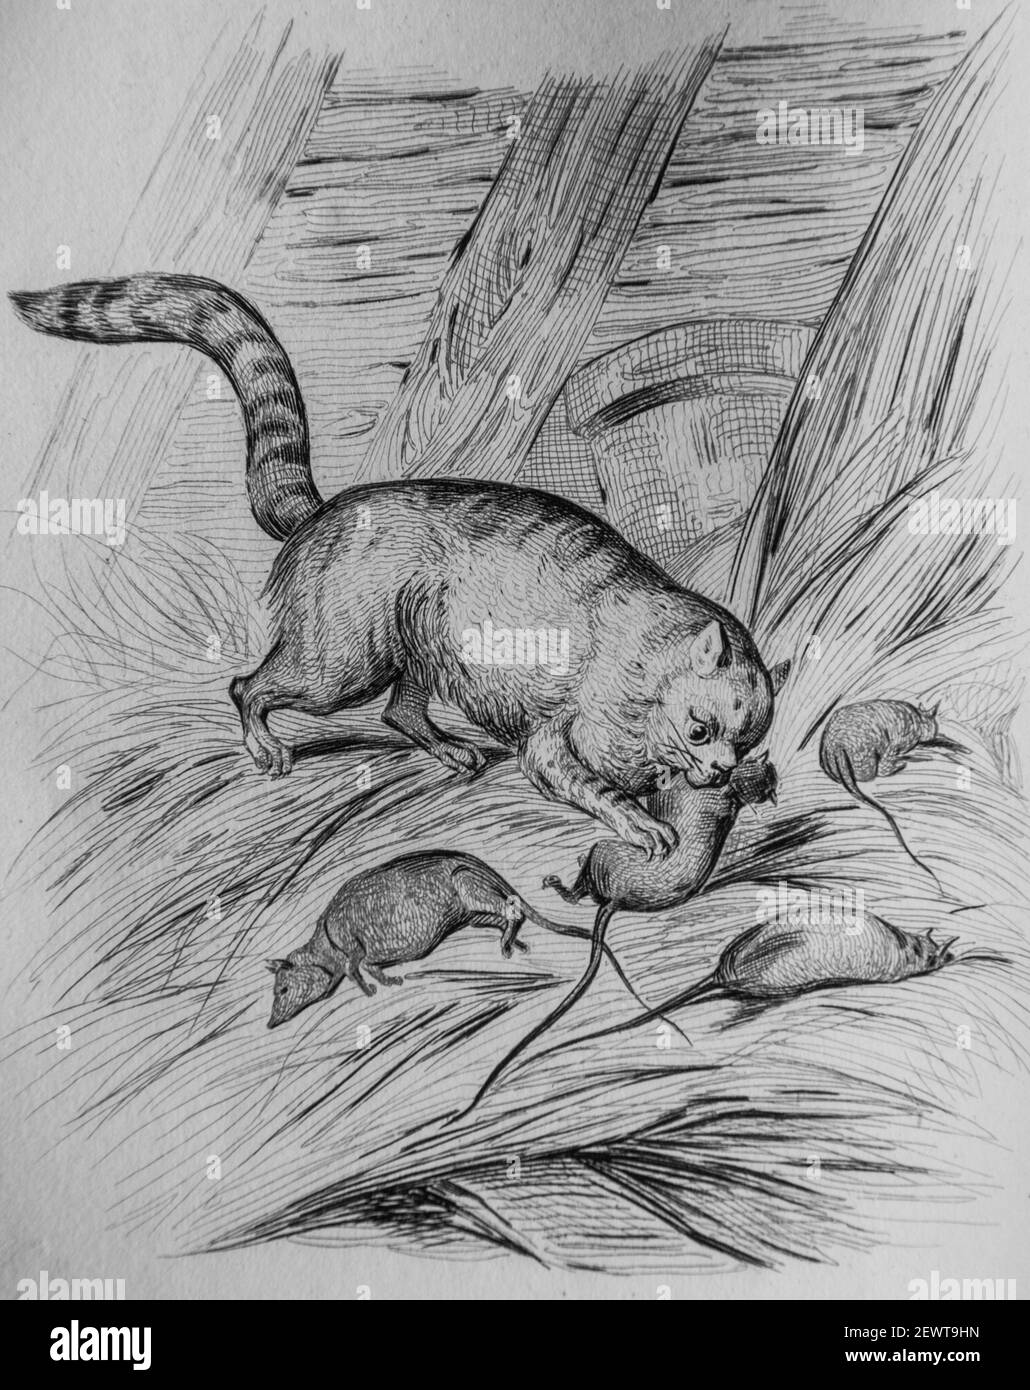 le chat et les rats, fables de florian illustrees par victor adam ,editeur delloye,desme 1838 Stock Photo